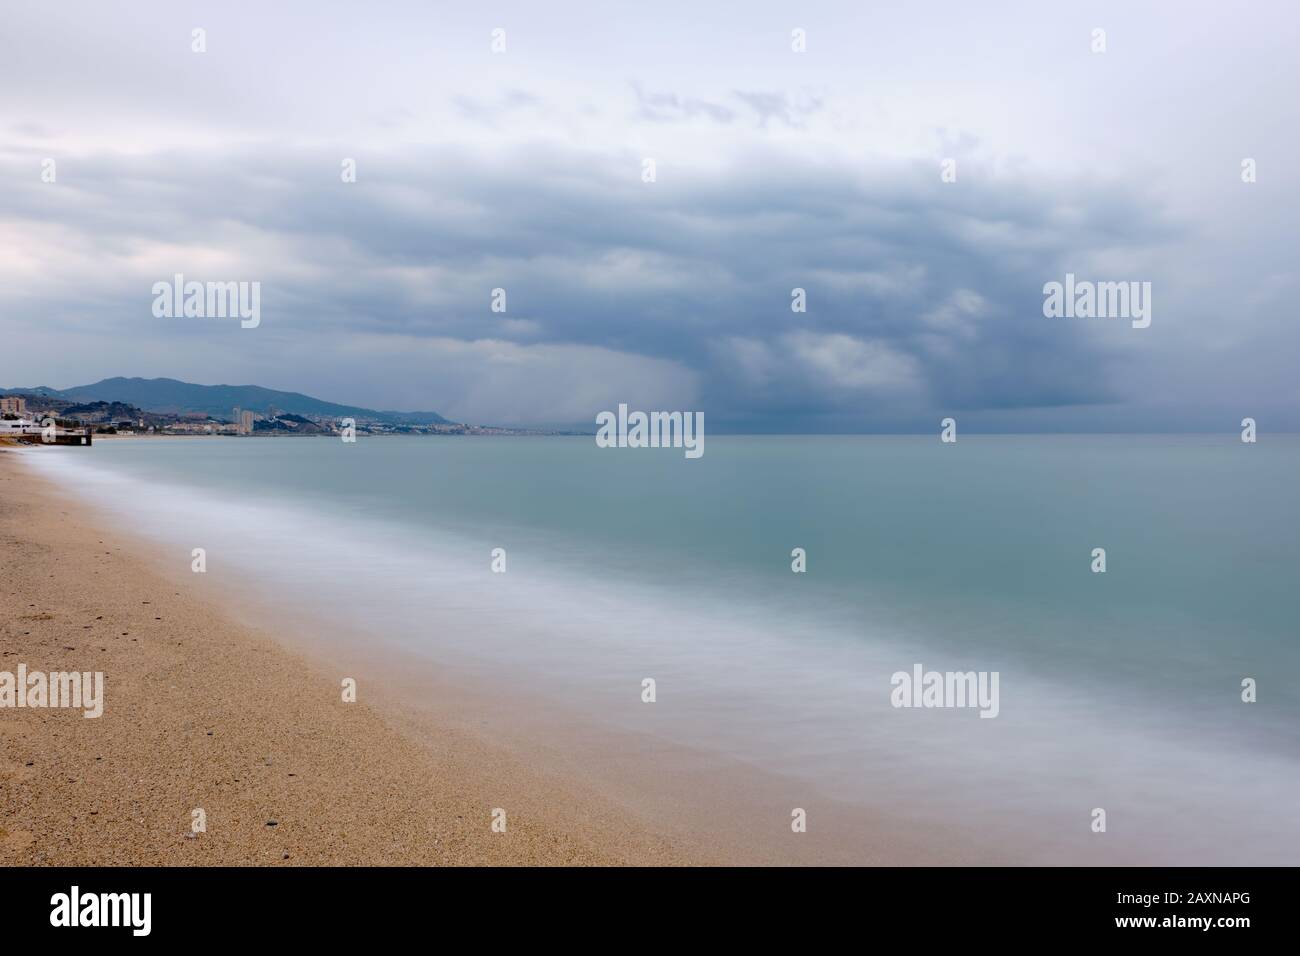 Lunga esposizione sulla spiaggia con sabbia dorata e una tempesta in lontananza, Badalona Foto Stock